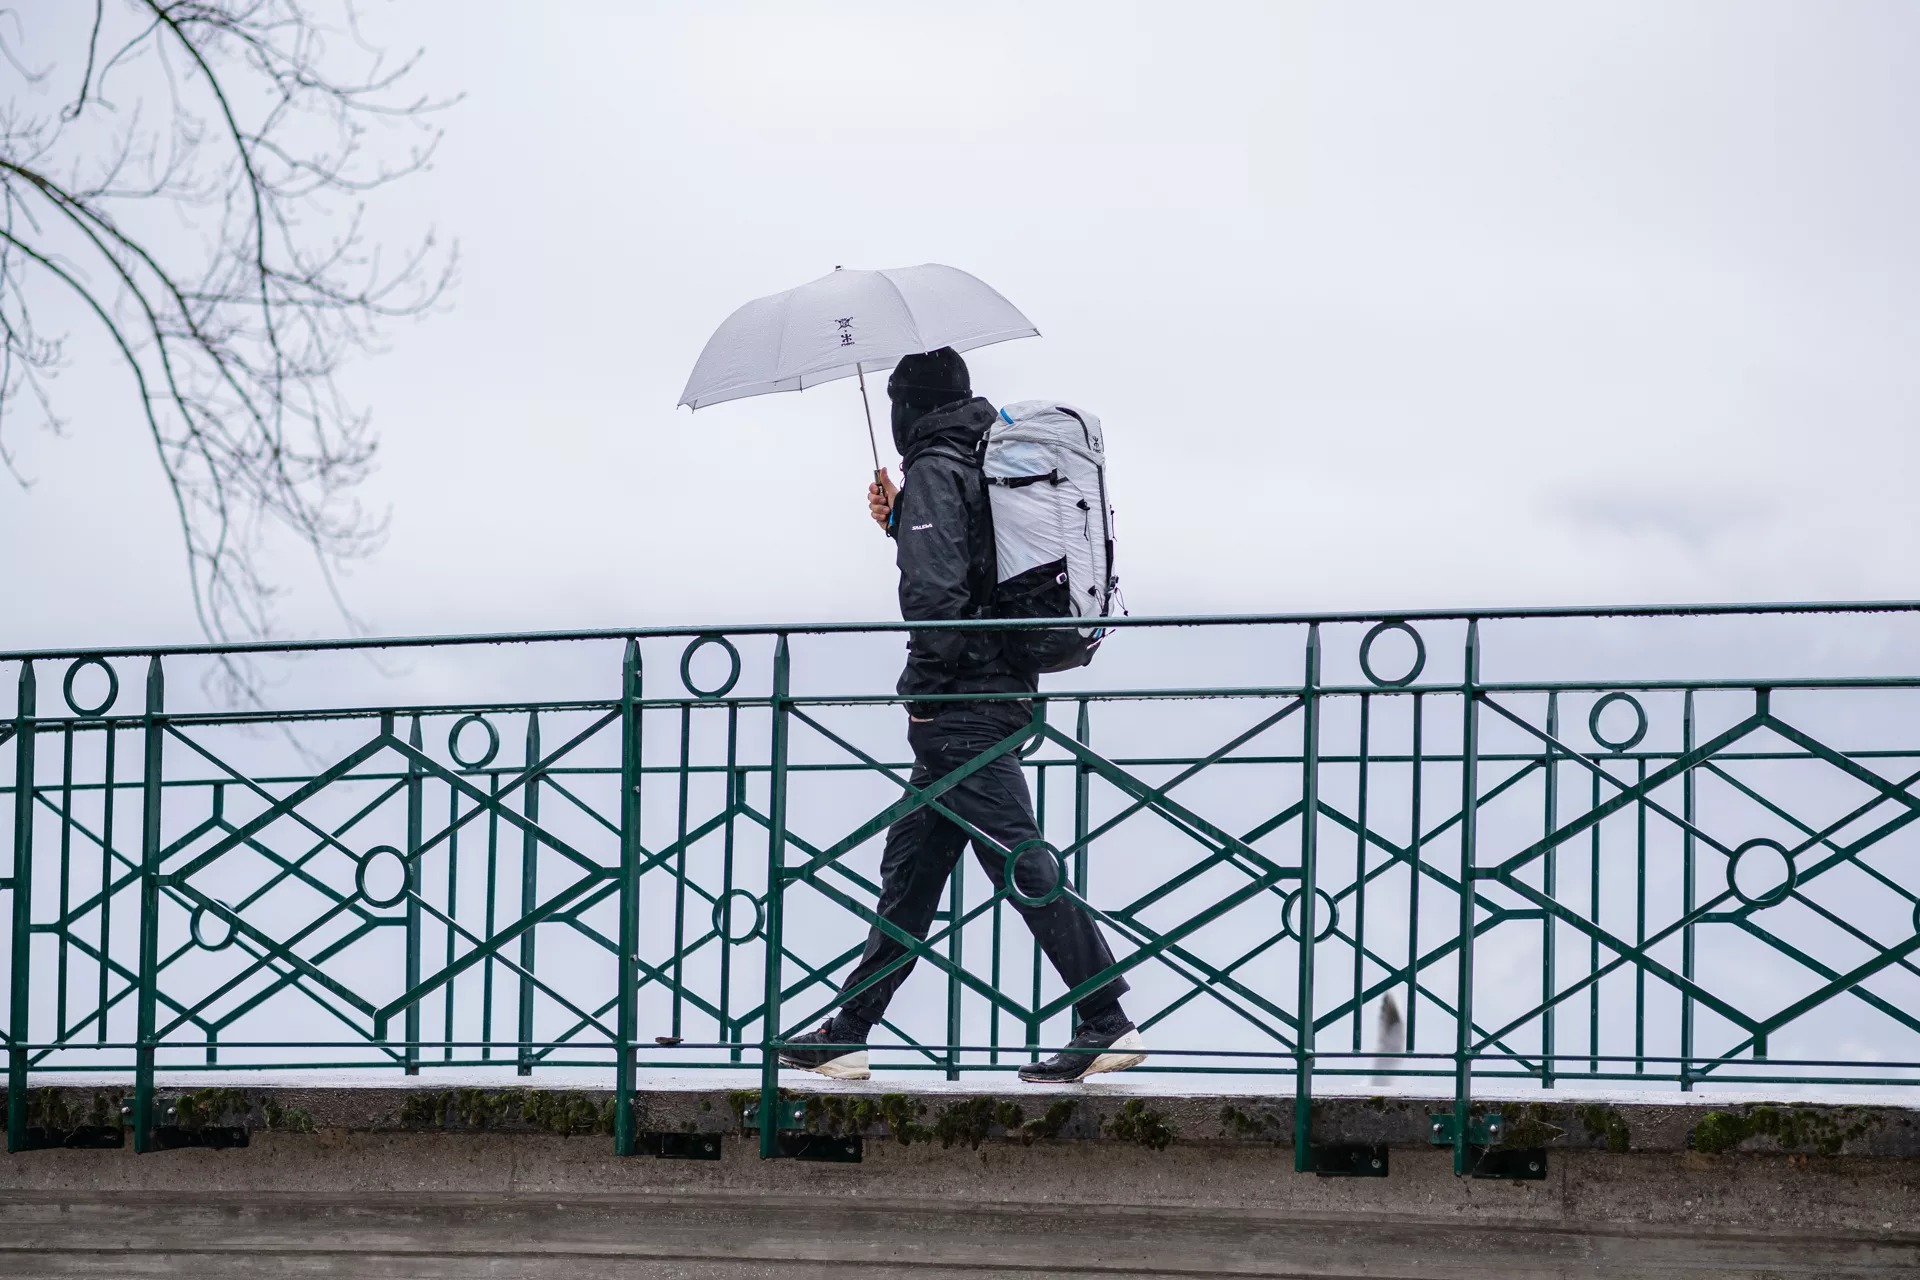 Parapluie Dyneema, NEO et Le Parapluie de Cherbourg pour innonver et créer un parapluie en tissu de parapente